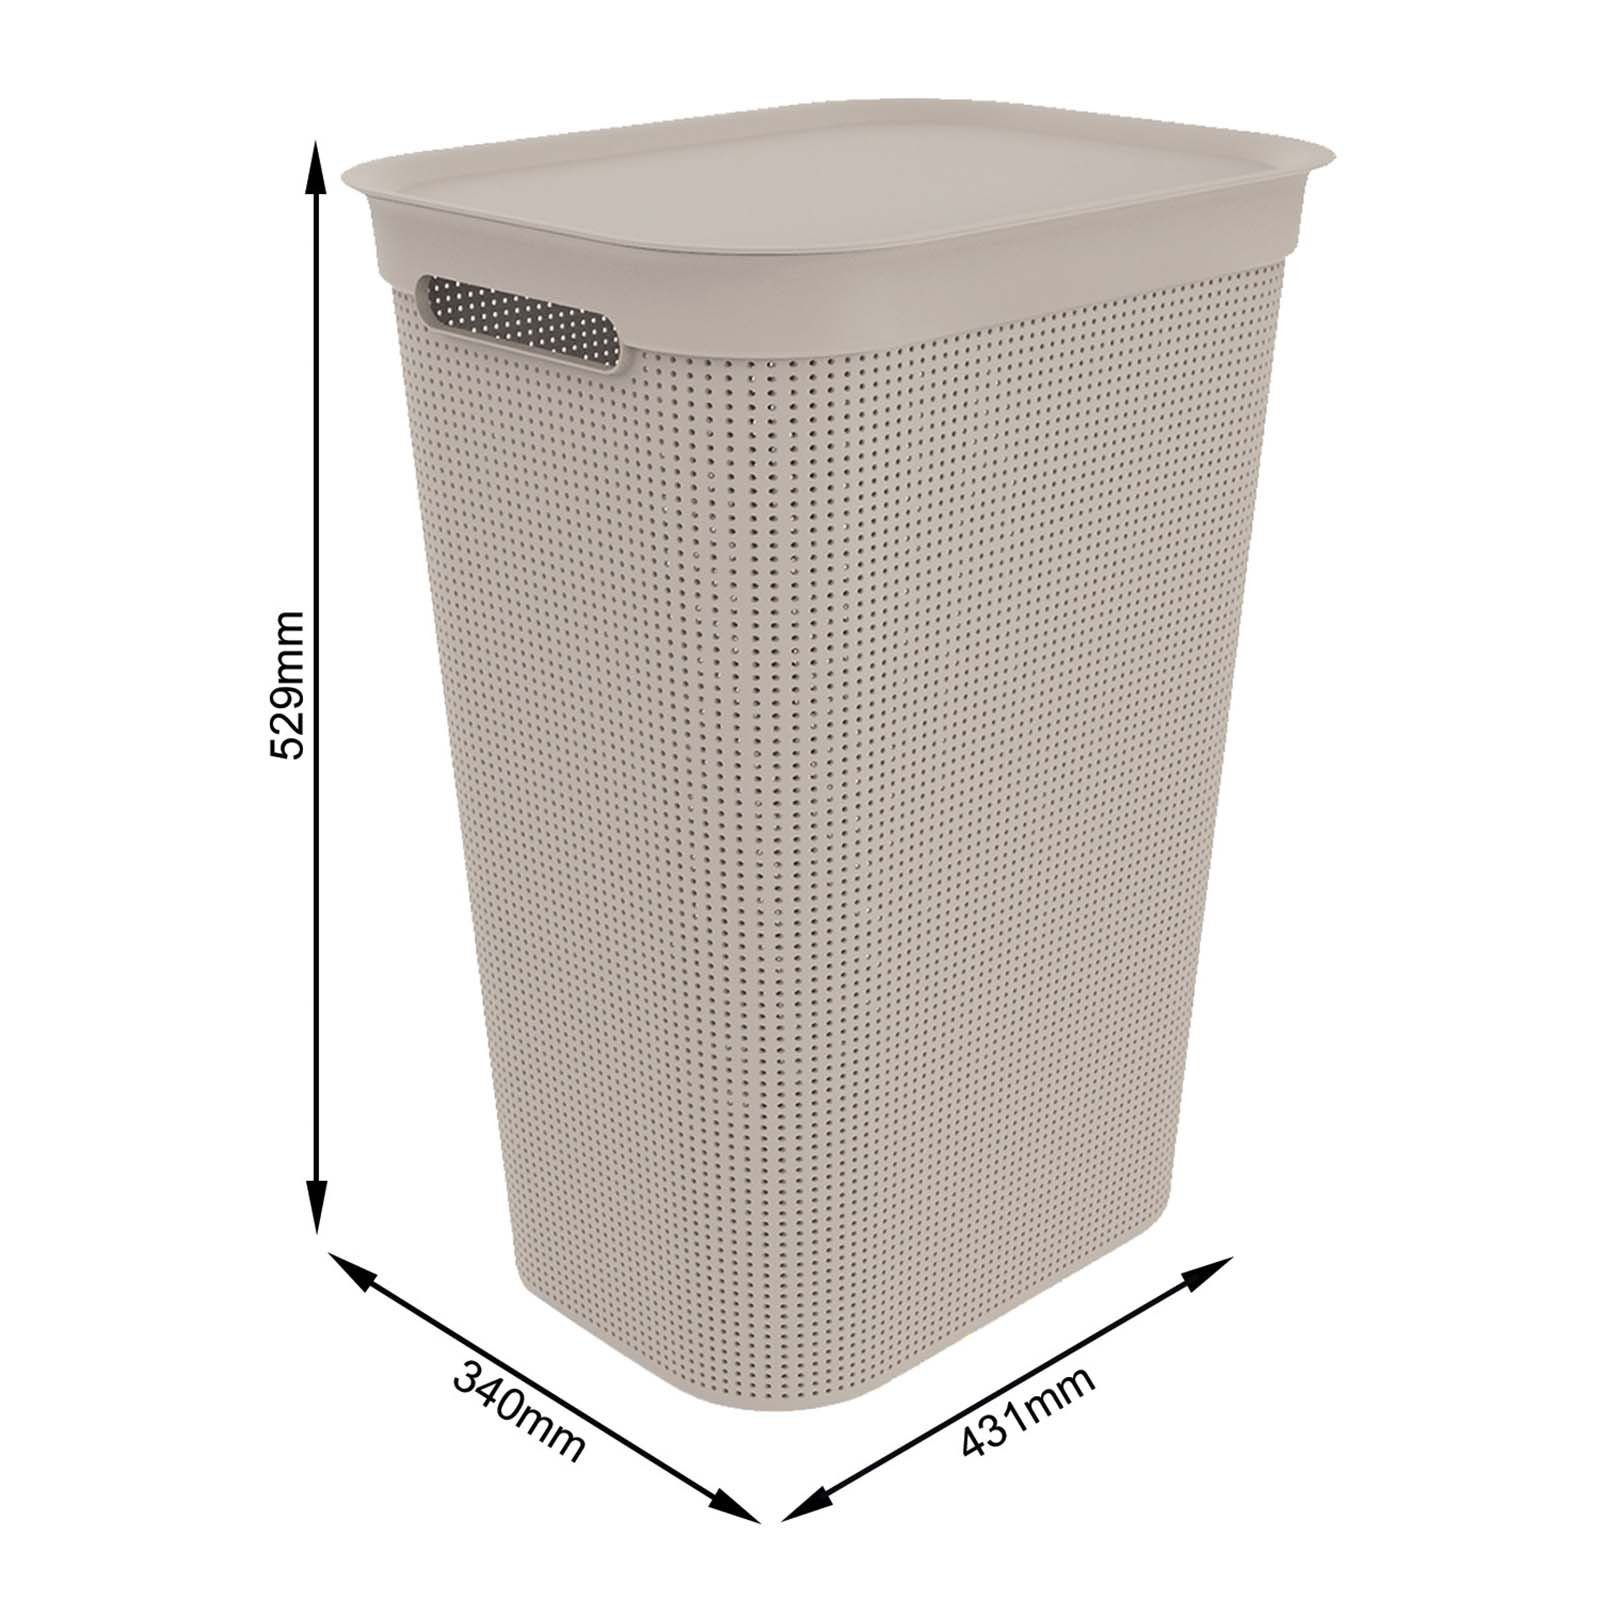 Rotho an Luftzirkulation ermöglicht ROTHO innerhalb Seiten Set Brisen Löcher Wäschebox der Wäsche, den Cappuccino Wäschekorb